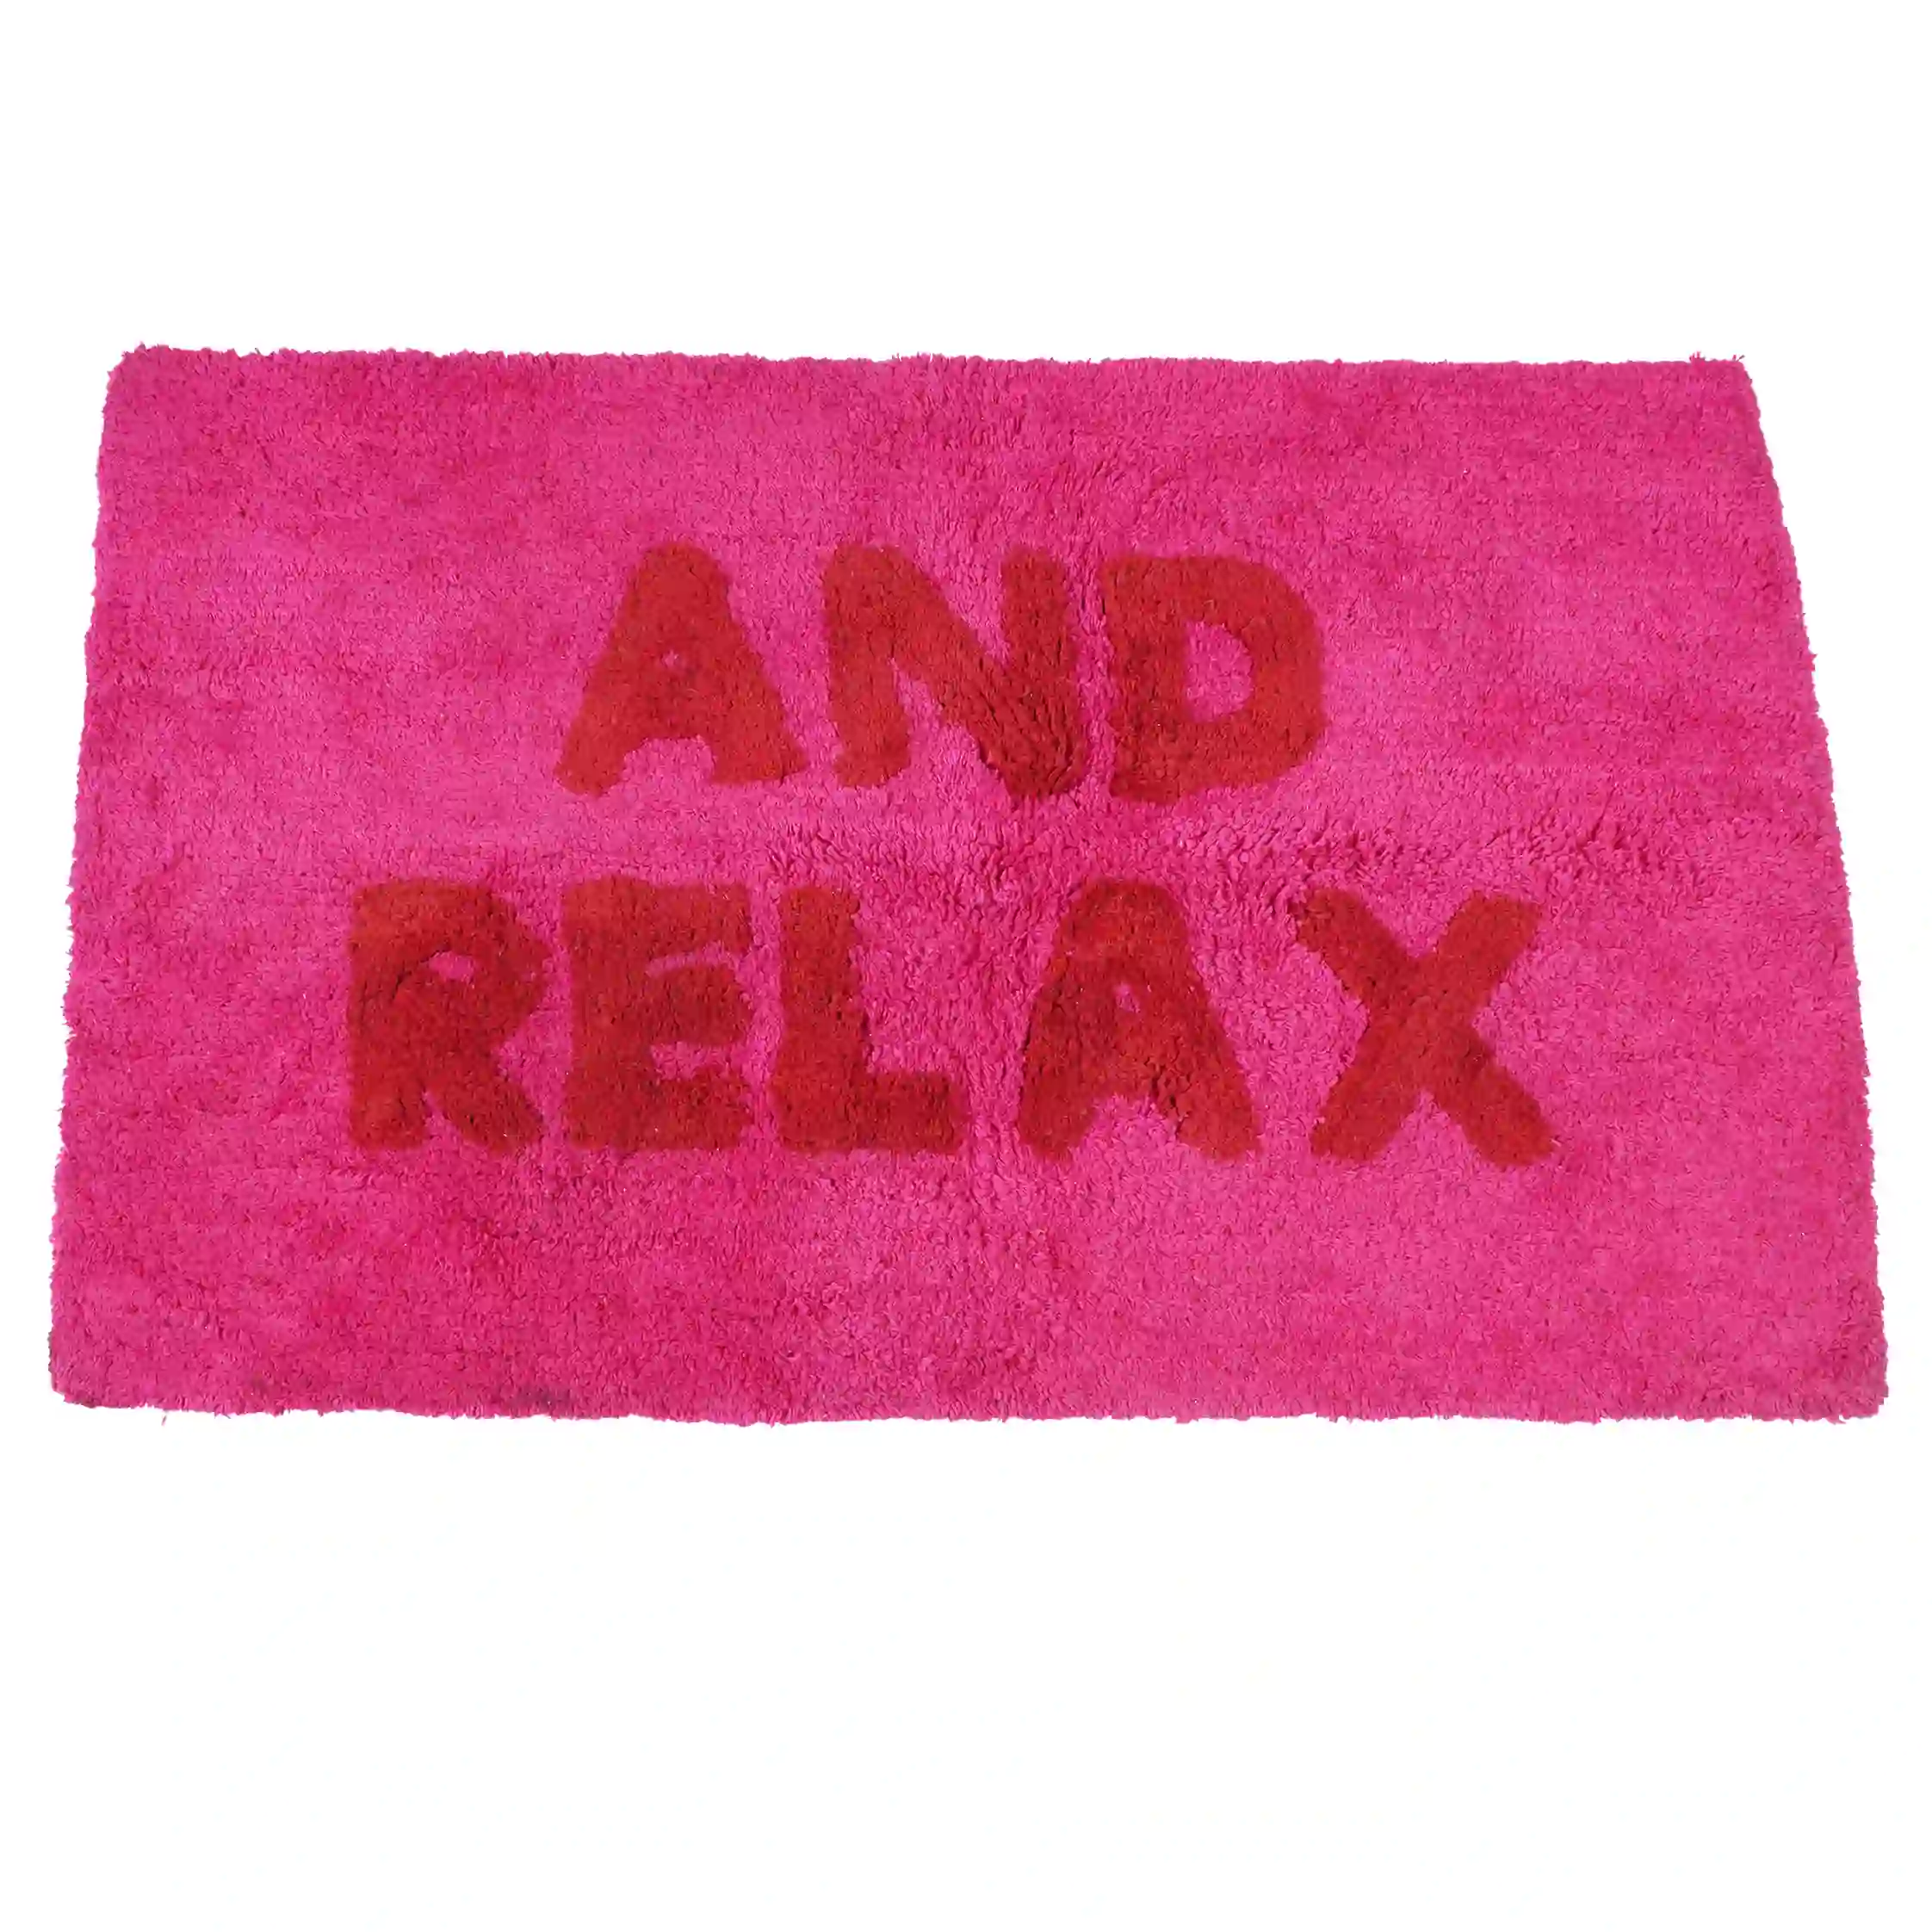 alfombrilla de nudos de baño en algodón - 'and relax' rosa